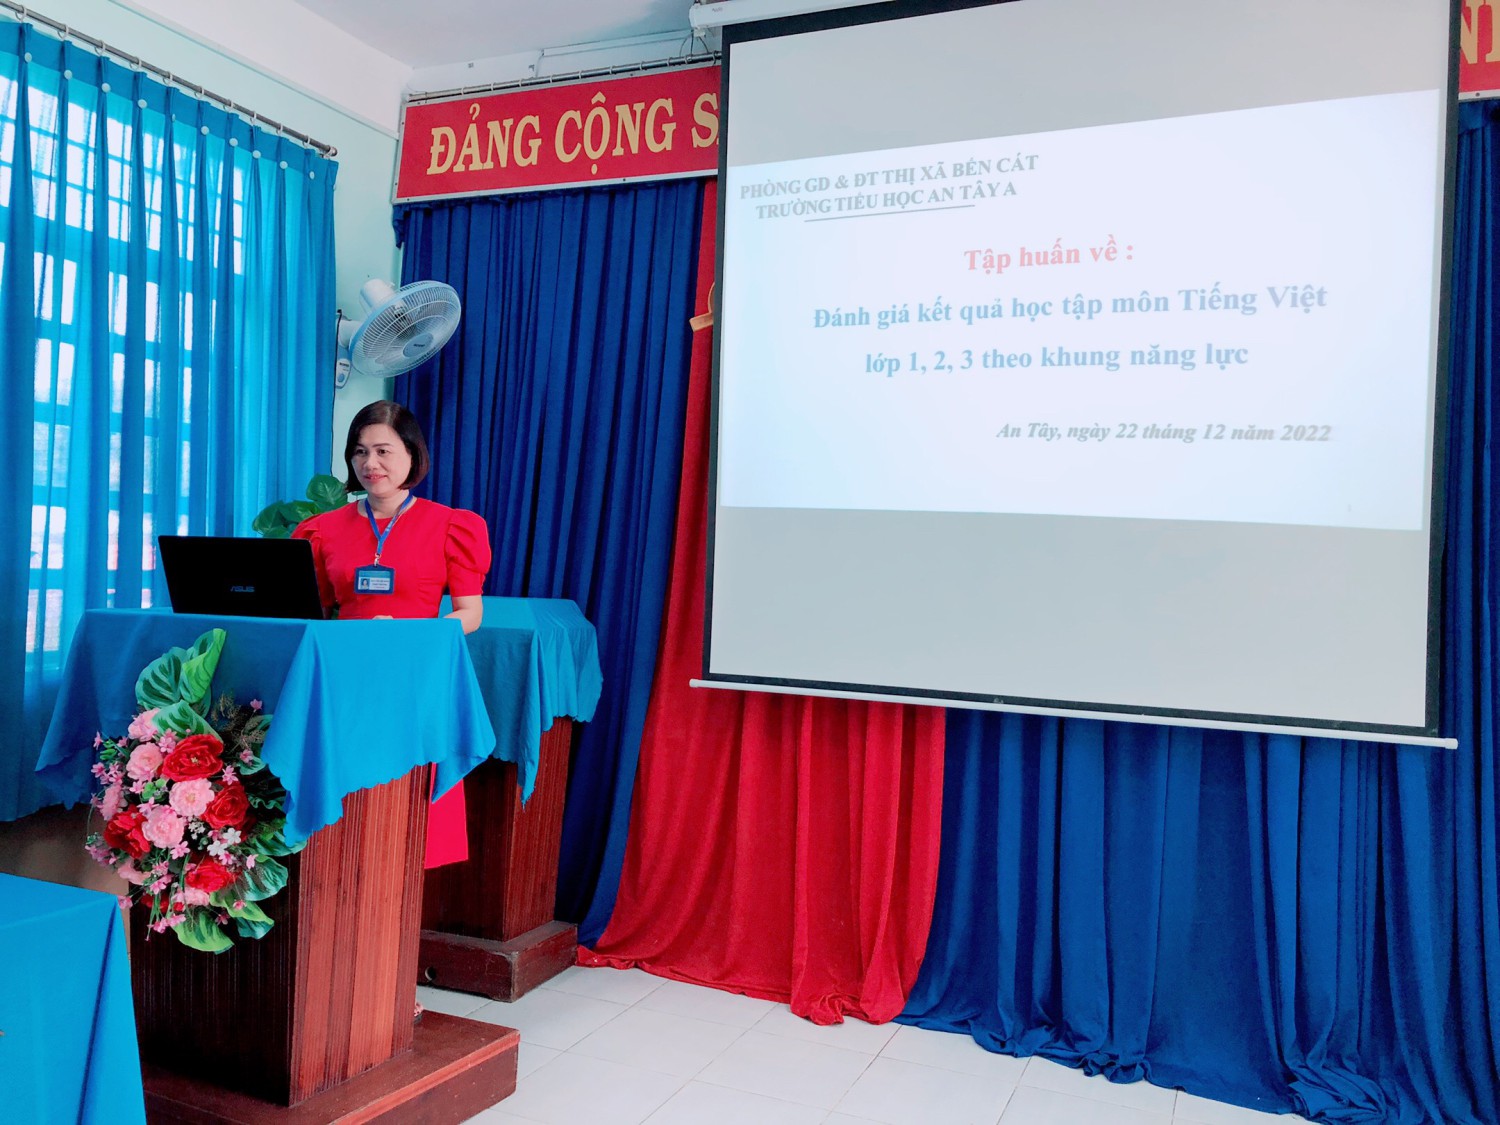 Tập huấn “Đánh giá kết quả học tập môn Tiếng Việt theo khung năng lực” và cách ra đề kiểm tra Lớp 1, 2, 3 theo chương trình giáo dục phổ thông 2018